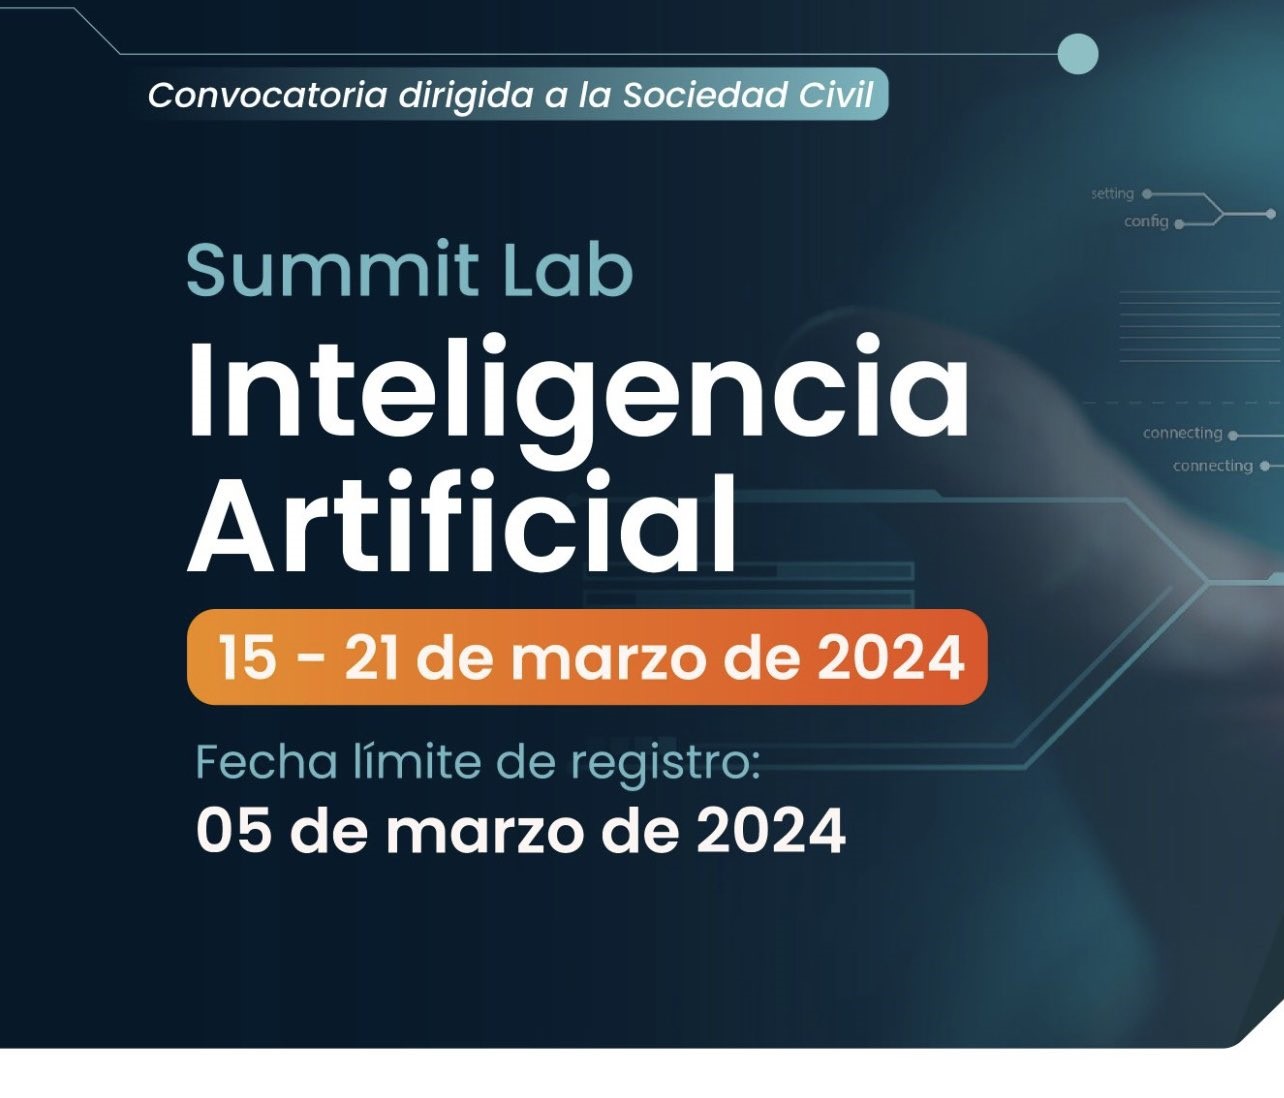 Summit Lab sobre Inteligencia Artificial